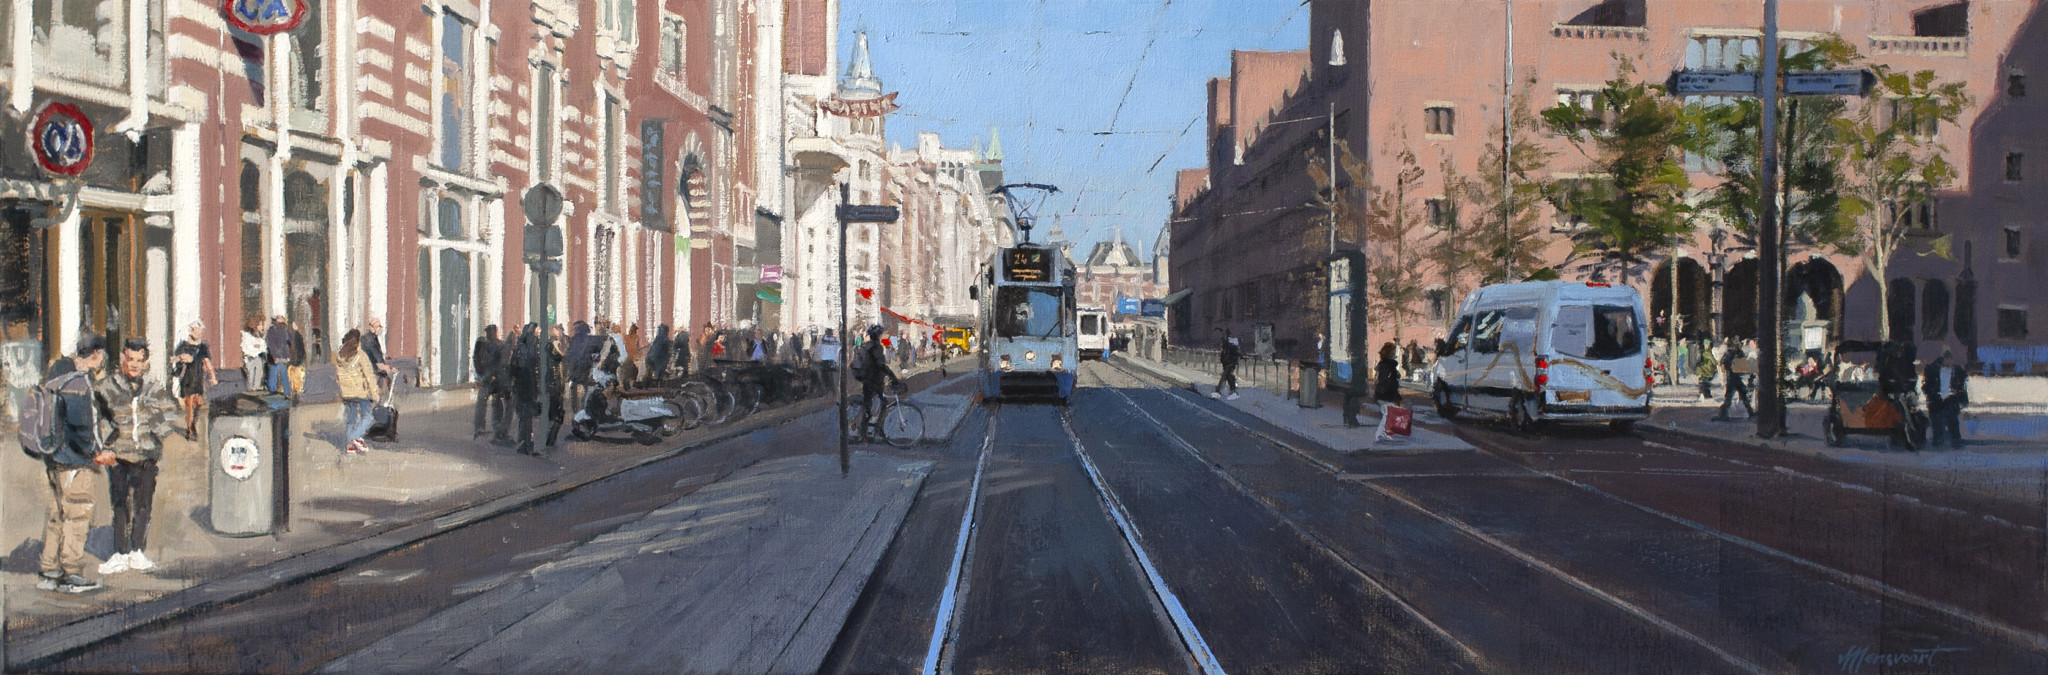 schilderij stadsgezicht amsterdam damrak trams